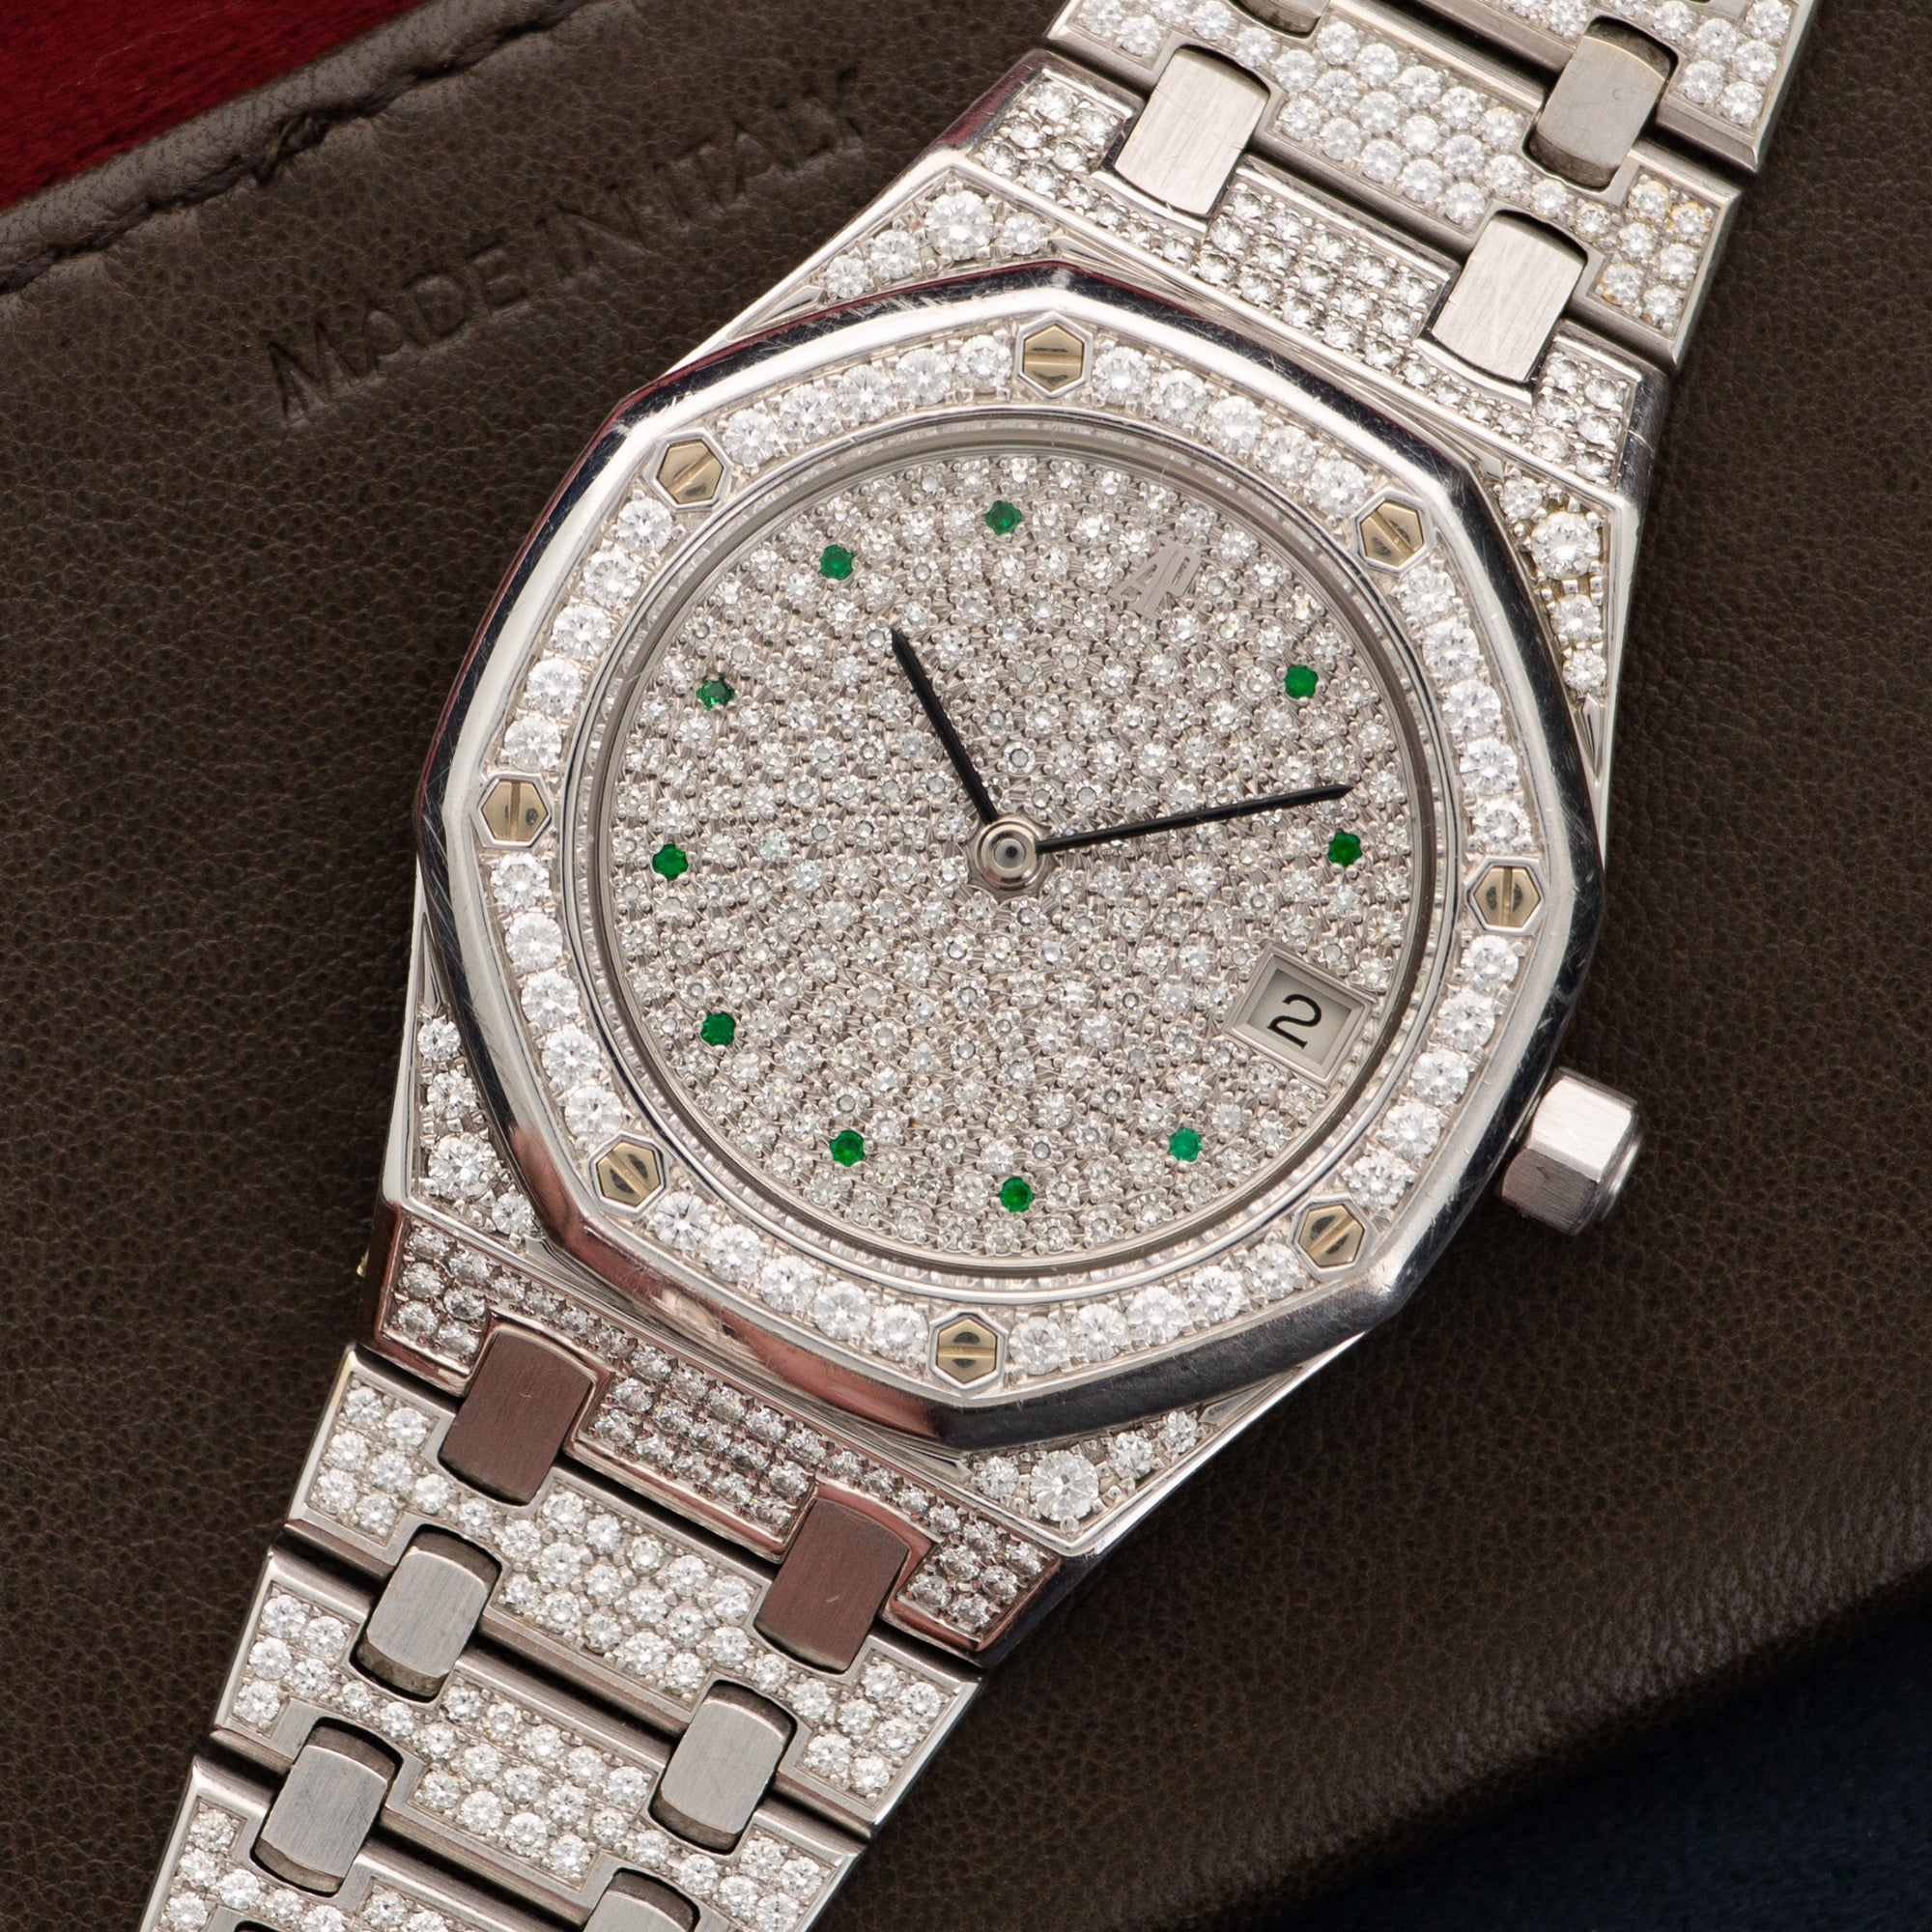 Audemars Piguet - Audemars Piguet White Gold Royal Oak Diamond & Emerald Watch - The Keystone Watches